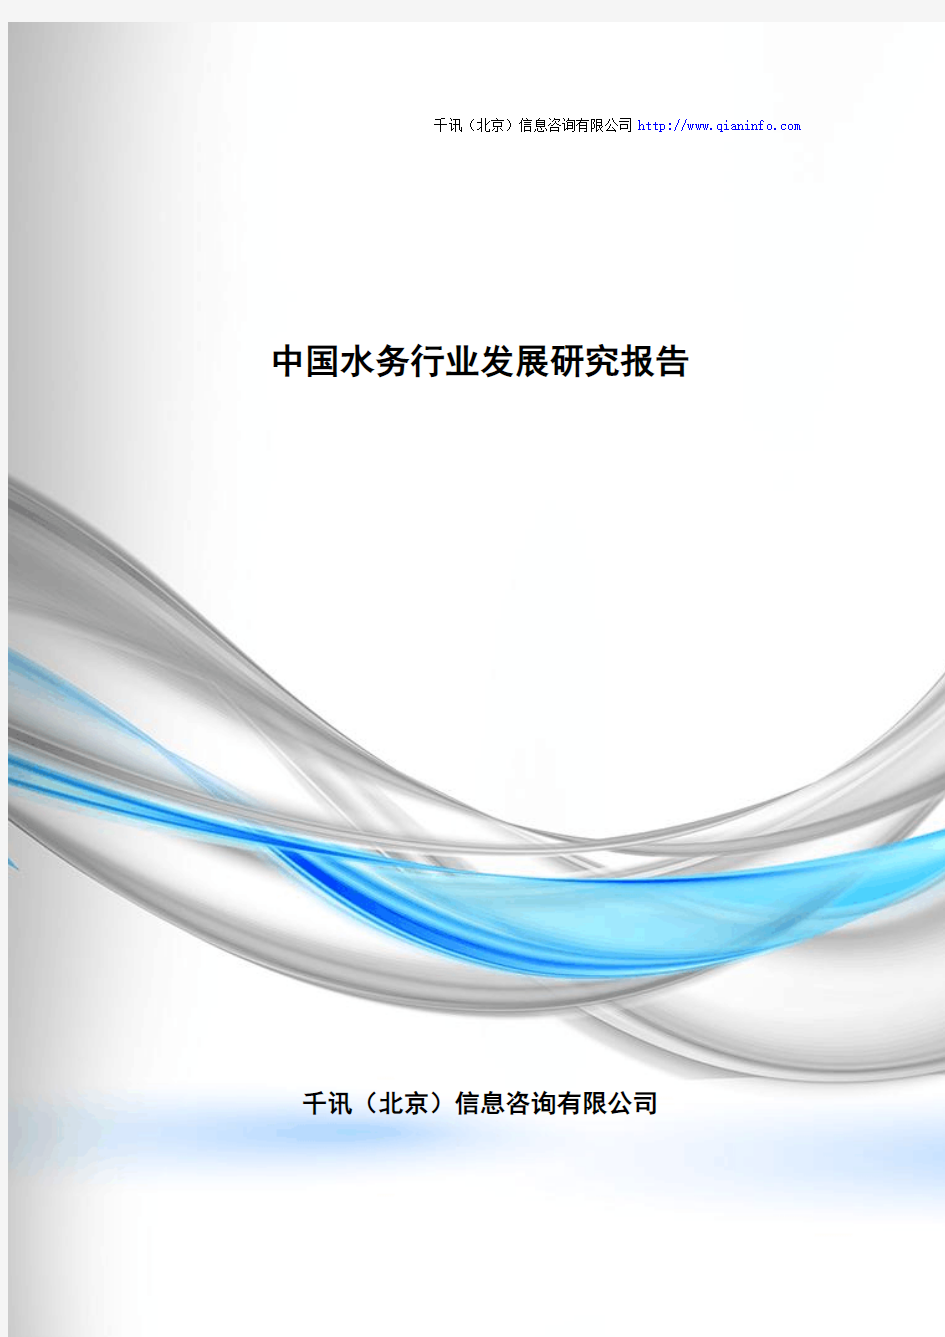 中国水务行业发展研究报告